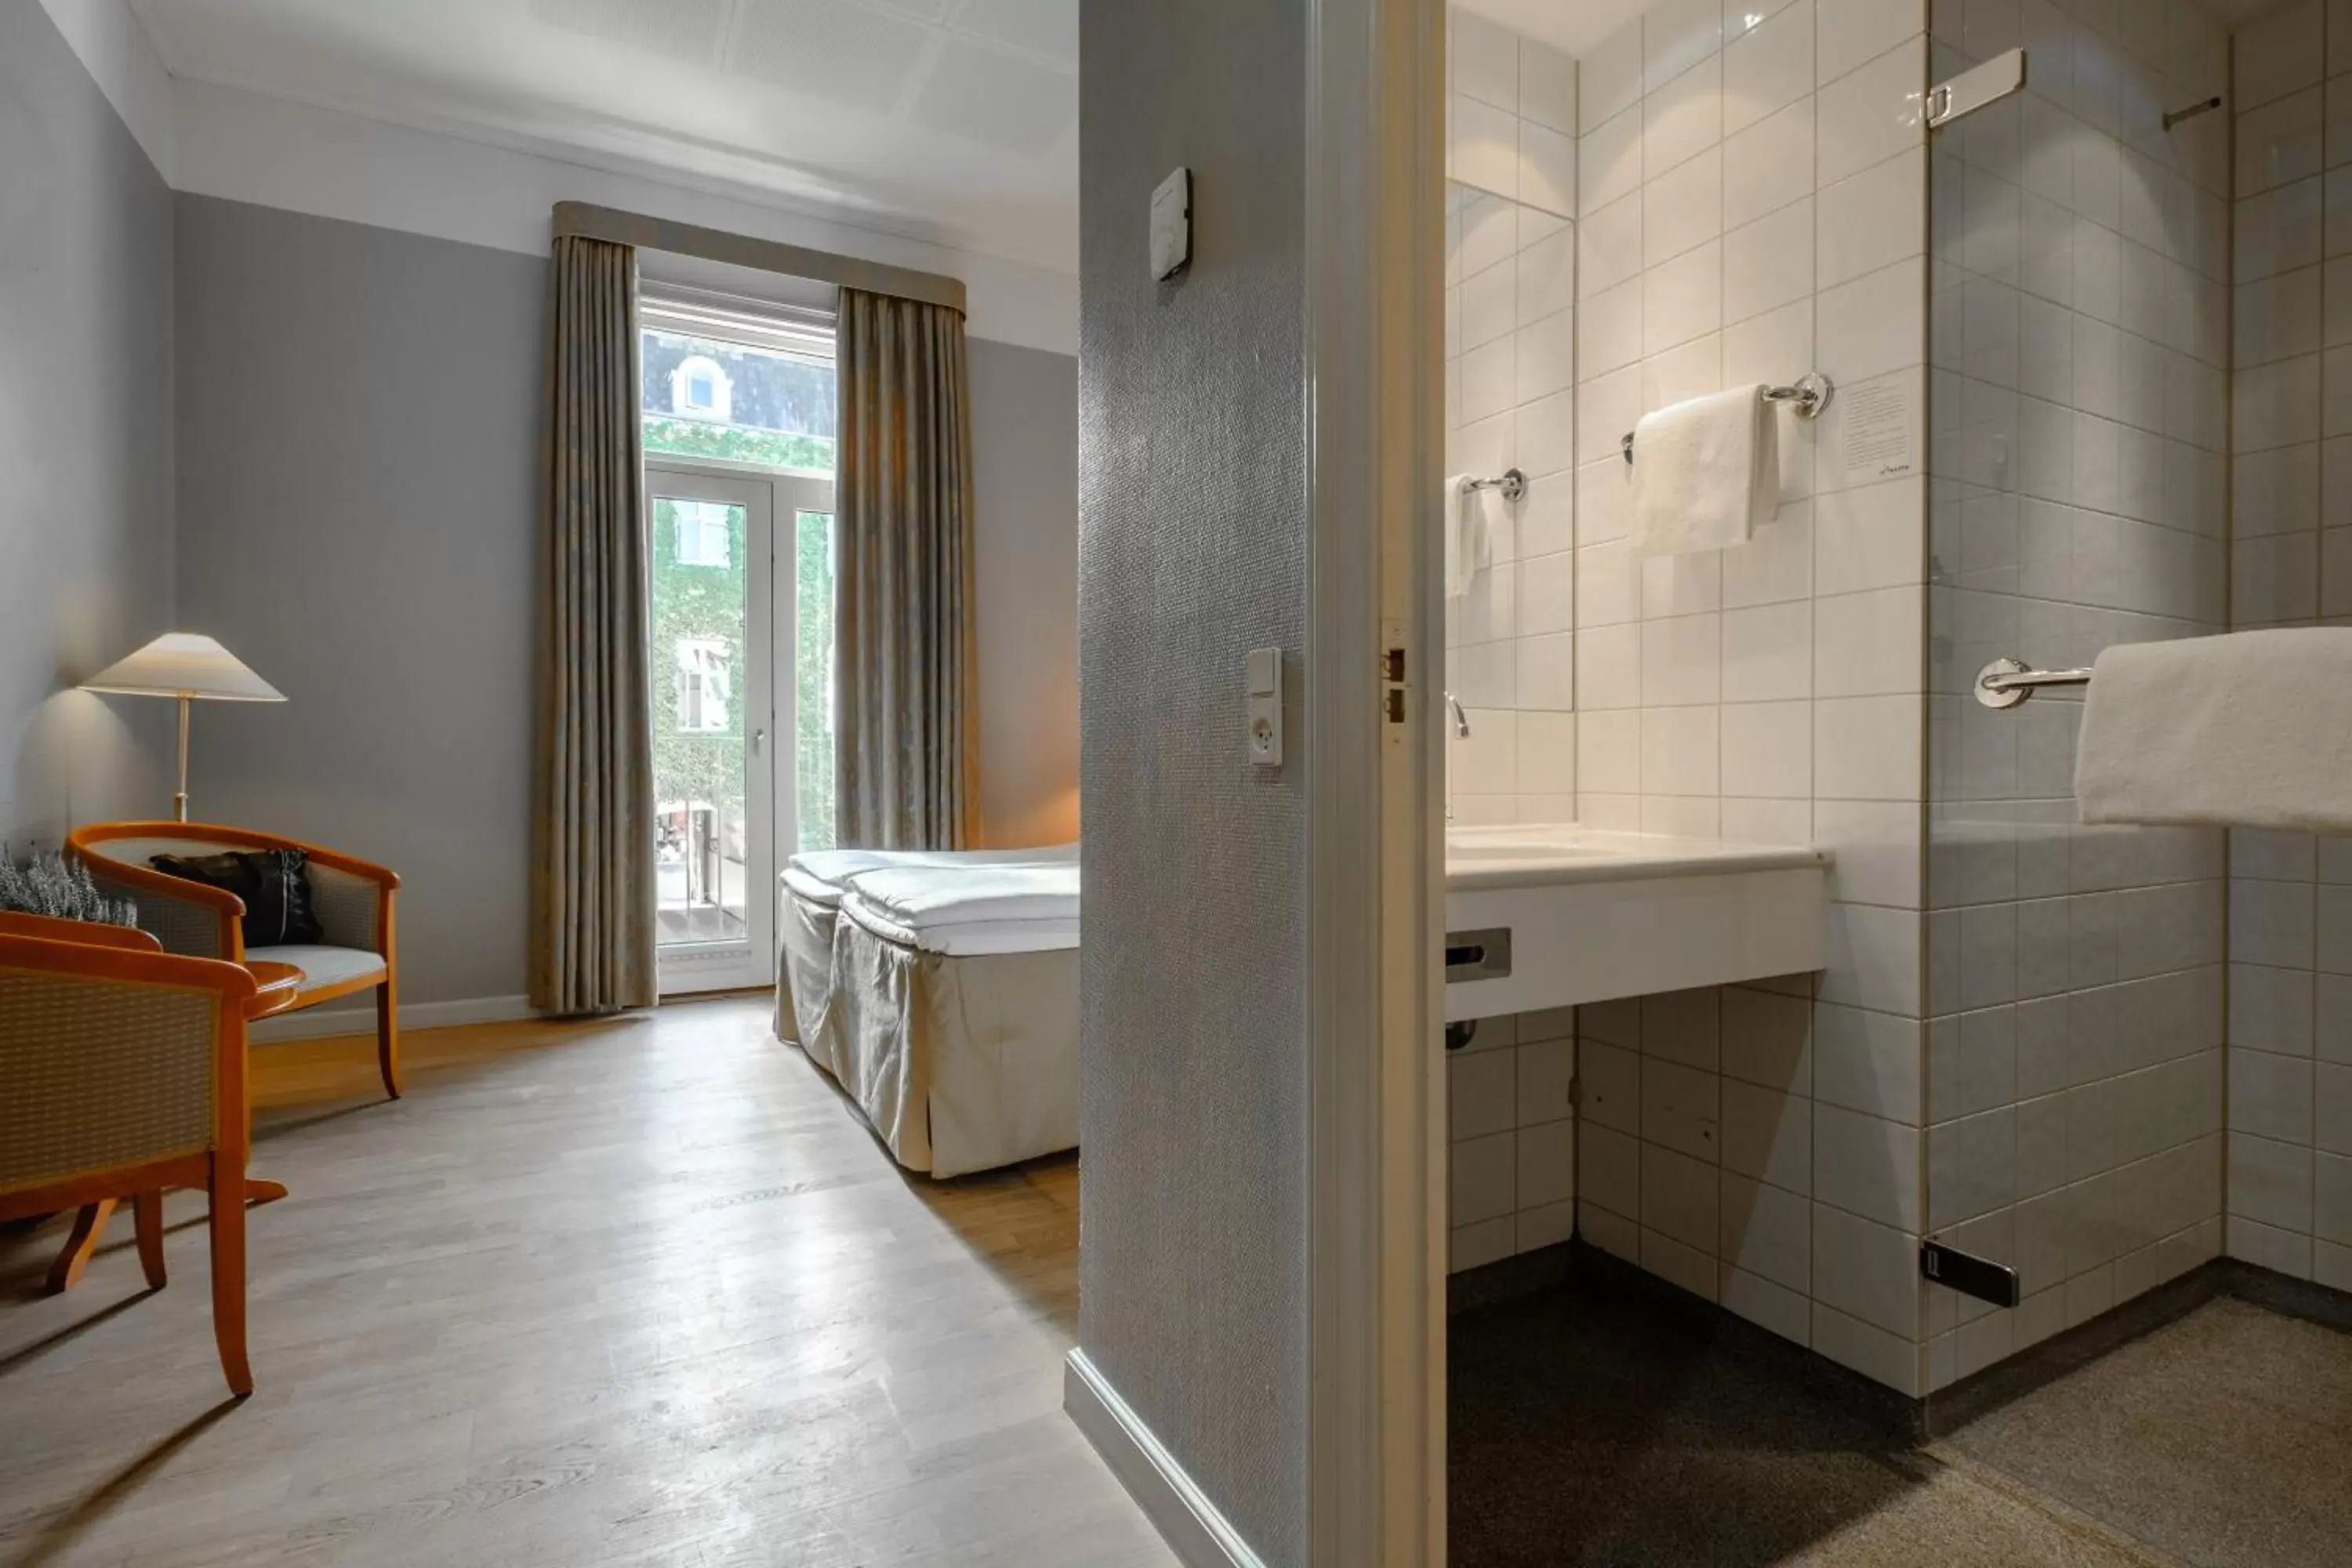 Photo of the whole room, Bathroom in Zleep Hotel Prindsen Roskilde